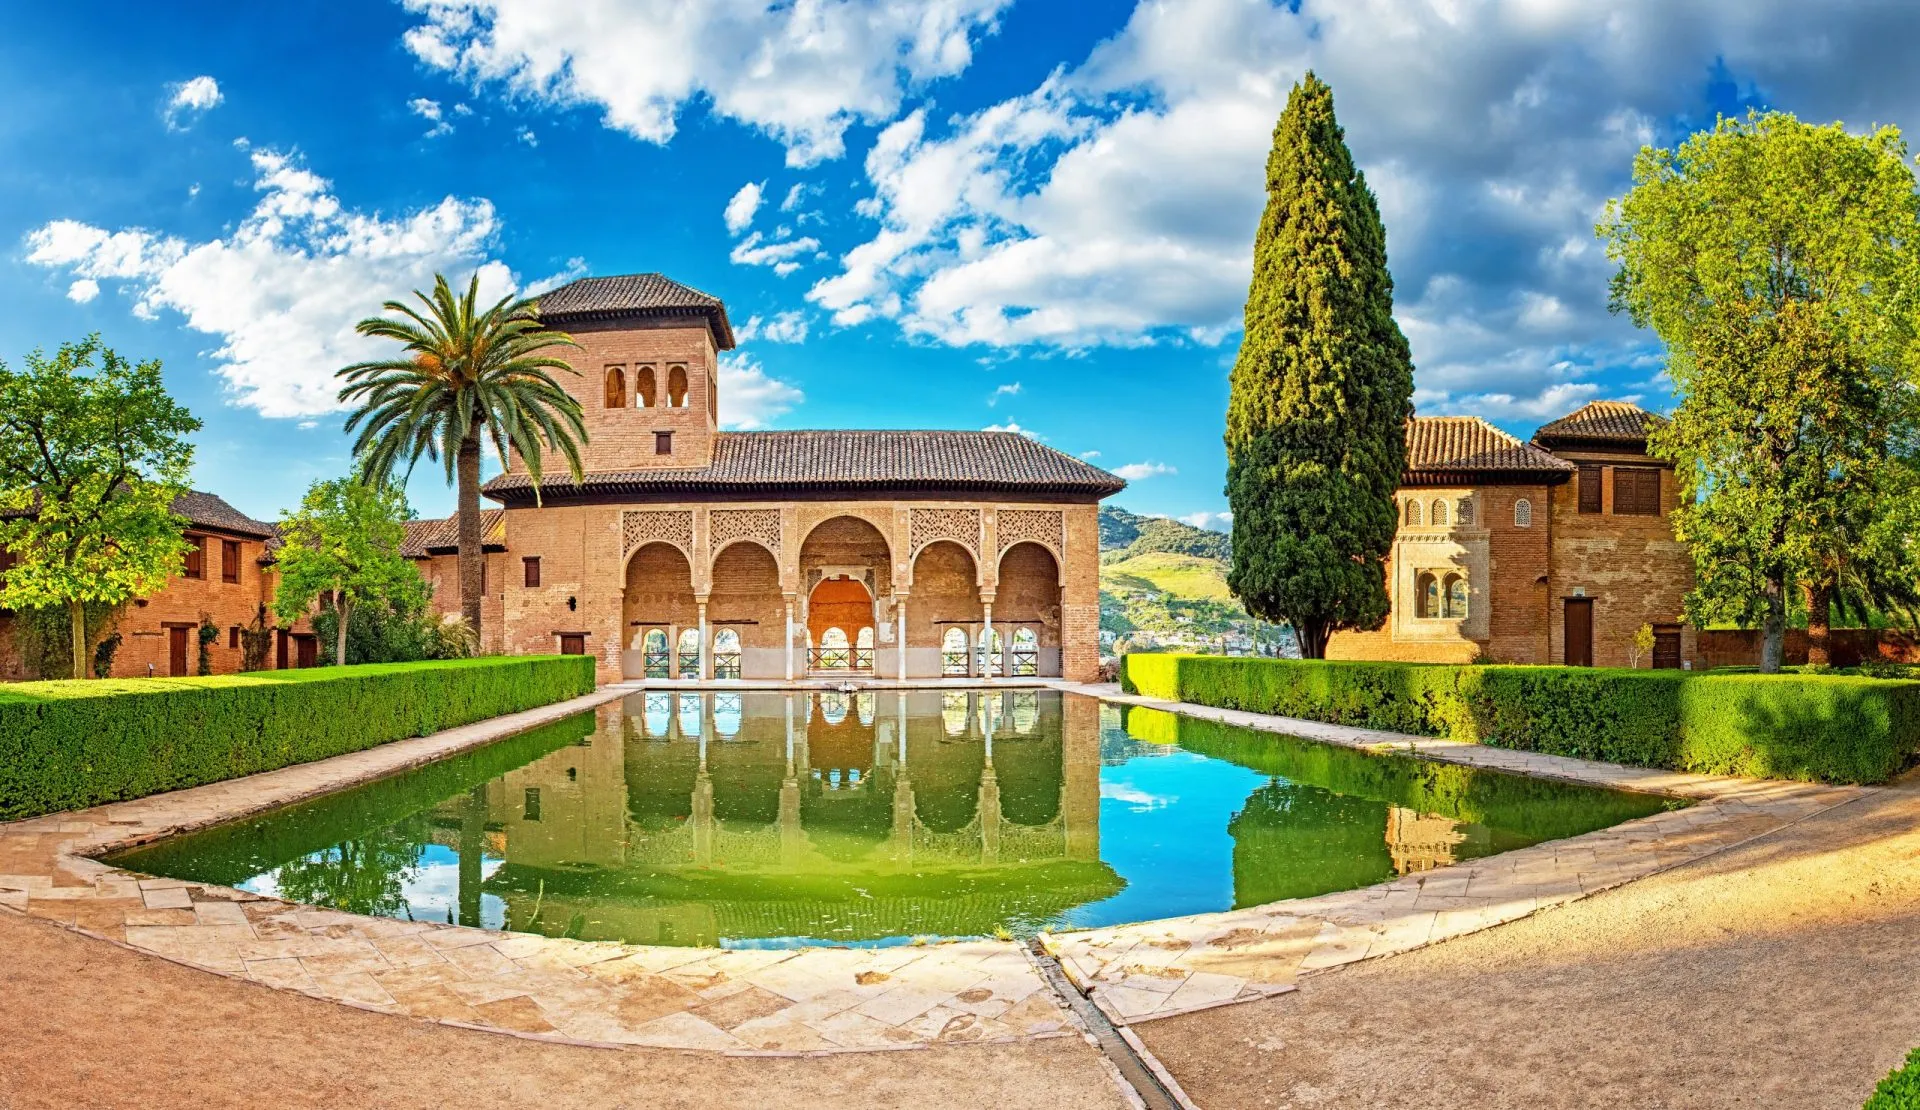 Palads i det berømte Alhambra i Granada, Spanien